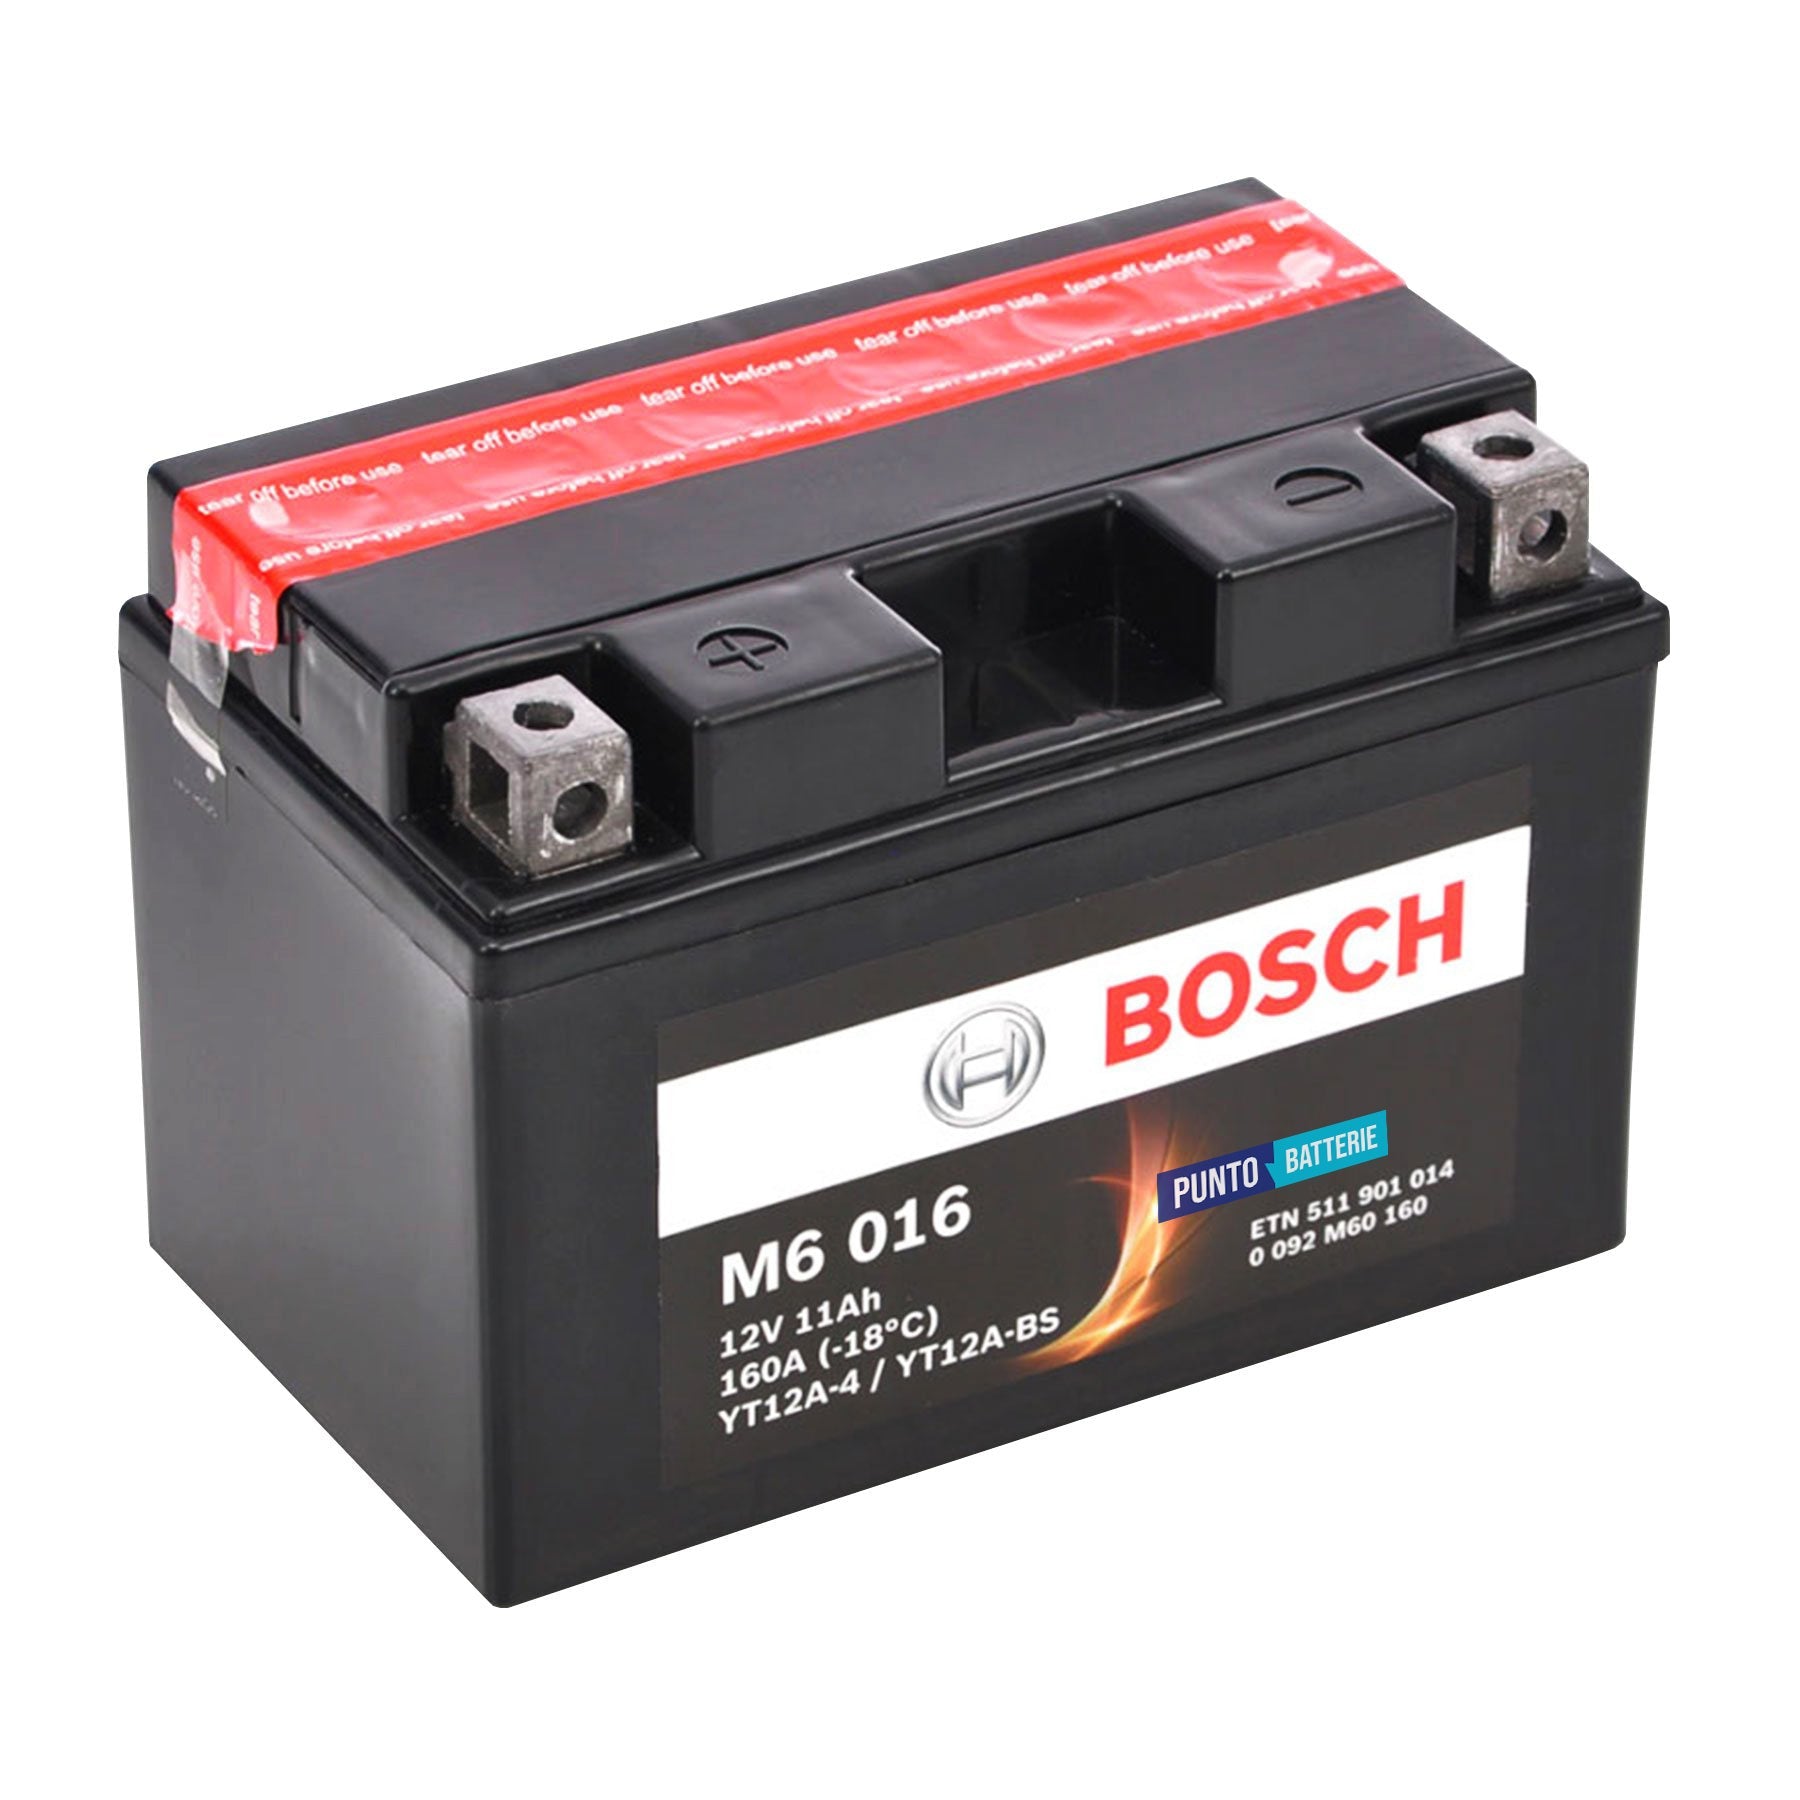 Batteria originale Bosch M6 M6016, dimensioni 150 x 87 x 105, polo positivo a sinistra, 12 volt, 11 amperora, 160 ampere. Batteria per